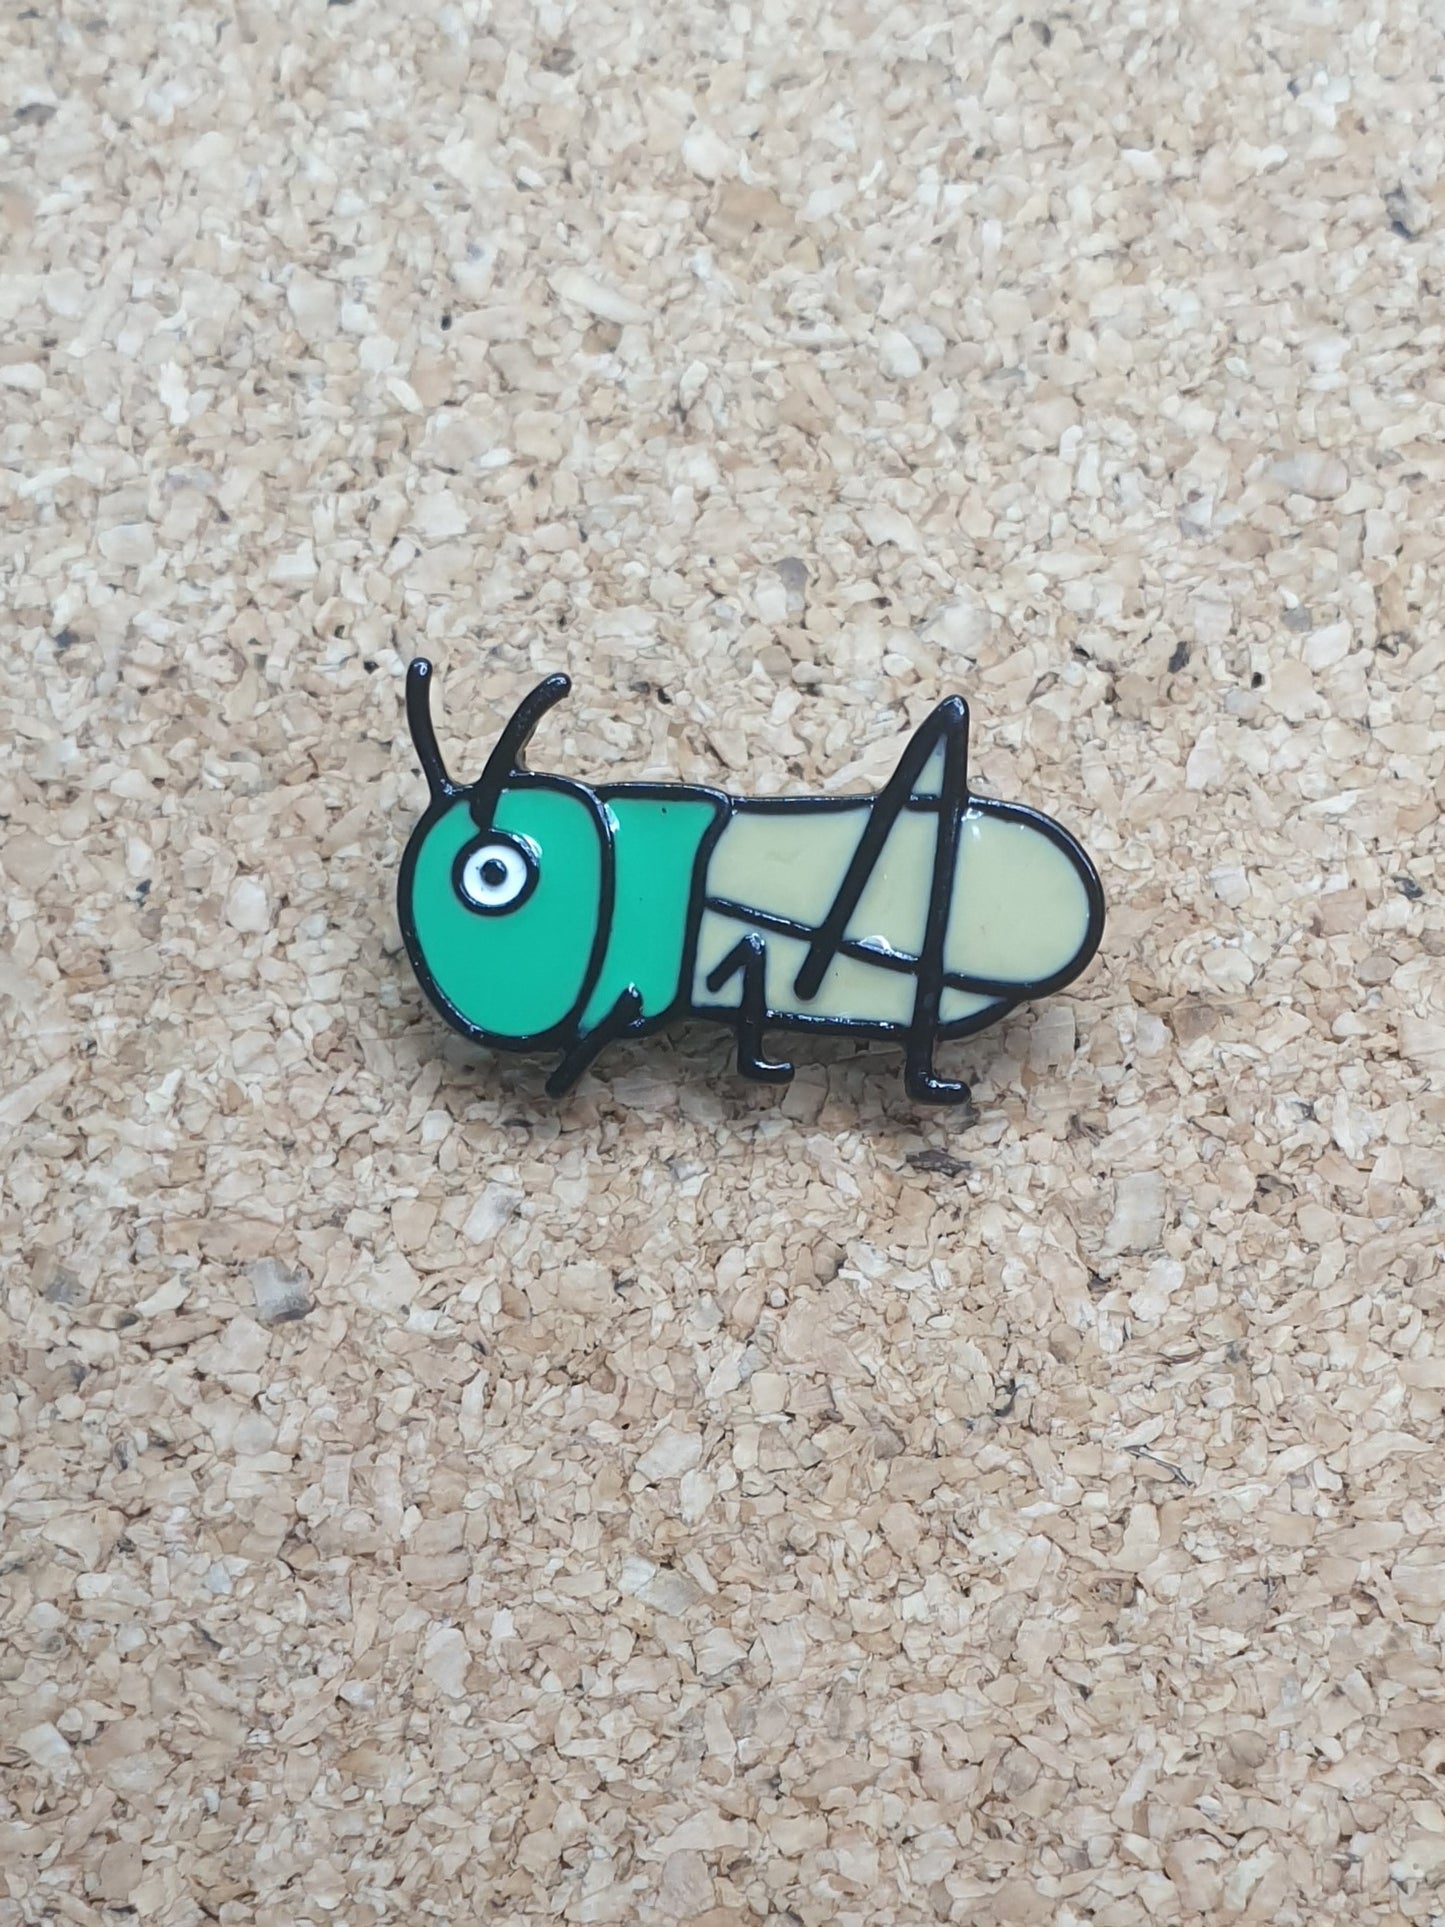 Grasshopper cartoon pin